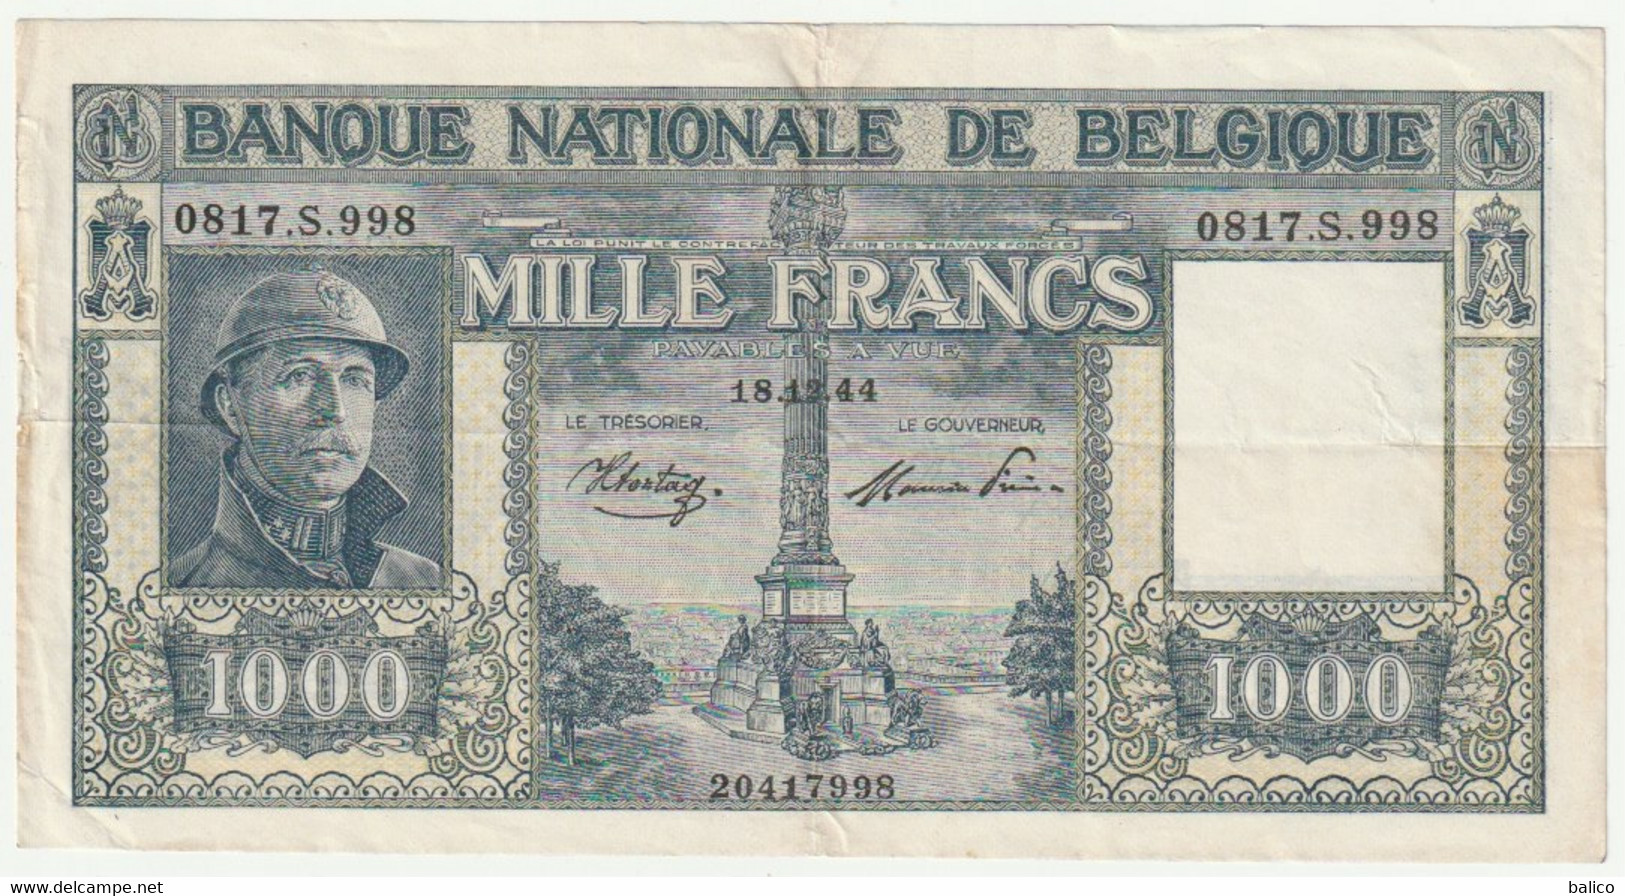 Banque Nationale De Belgique - Mille Francs 18/12/44 - N° 0817.S.998 - 1000 Francs  (très Rare) 20417998 - [ 9] Colecciones